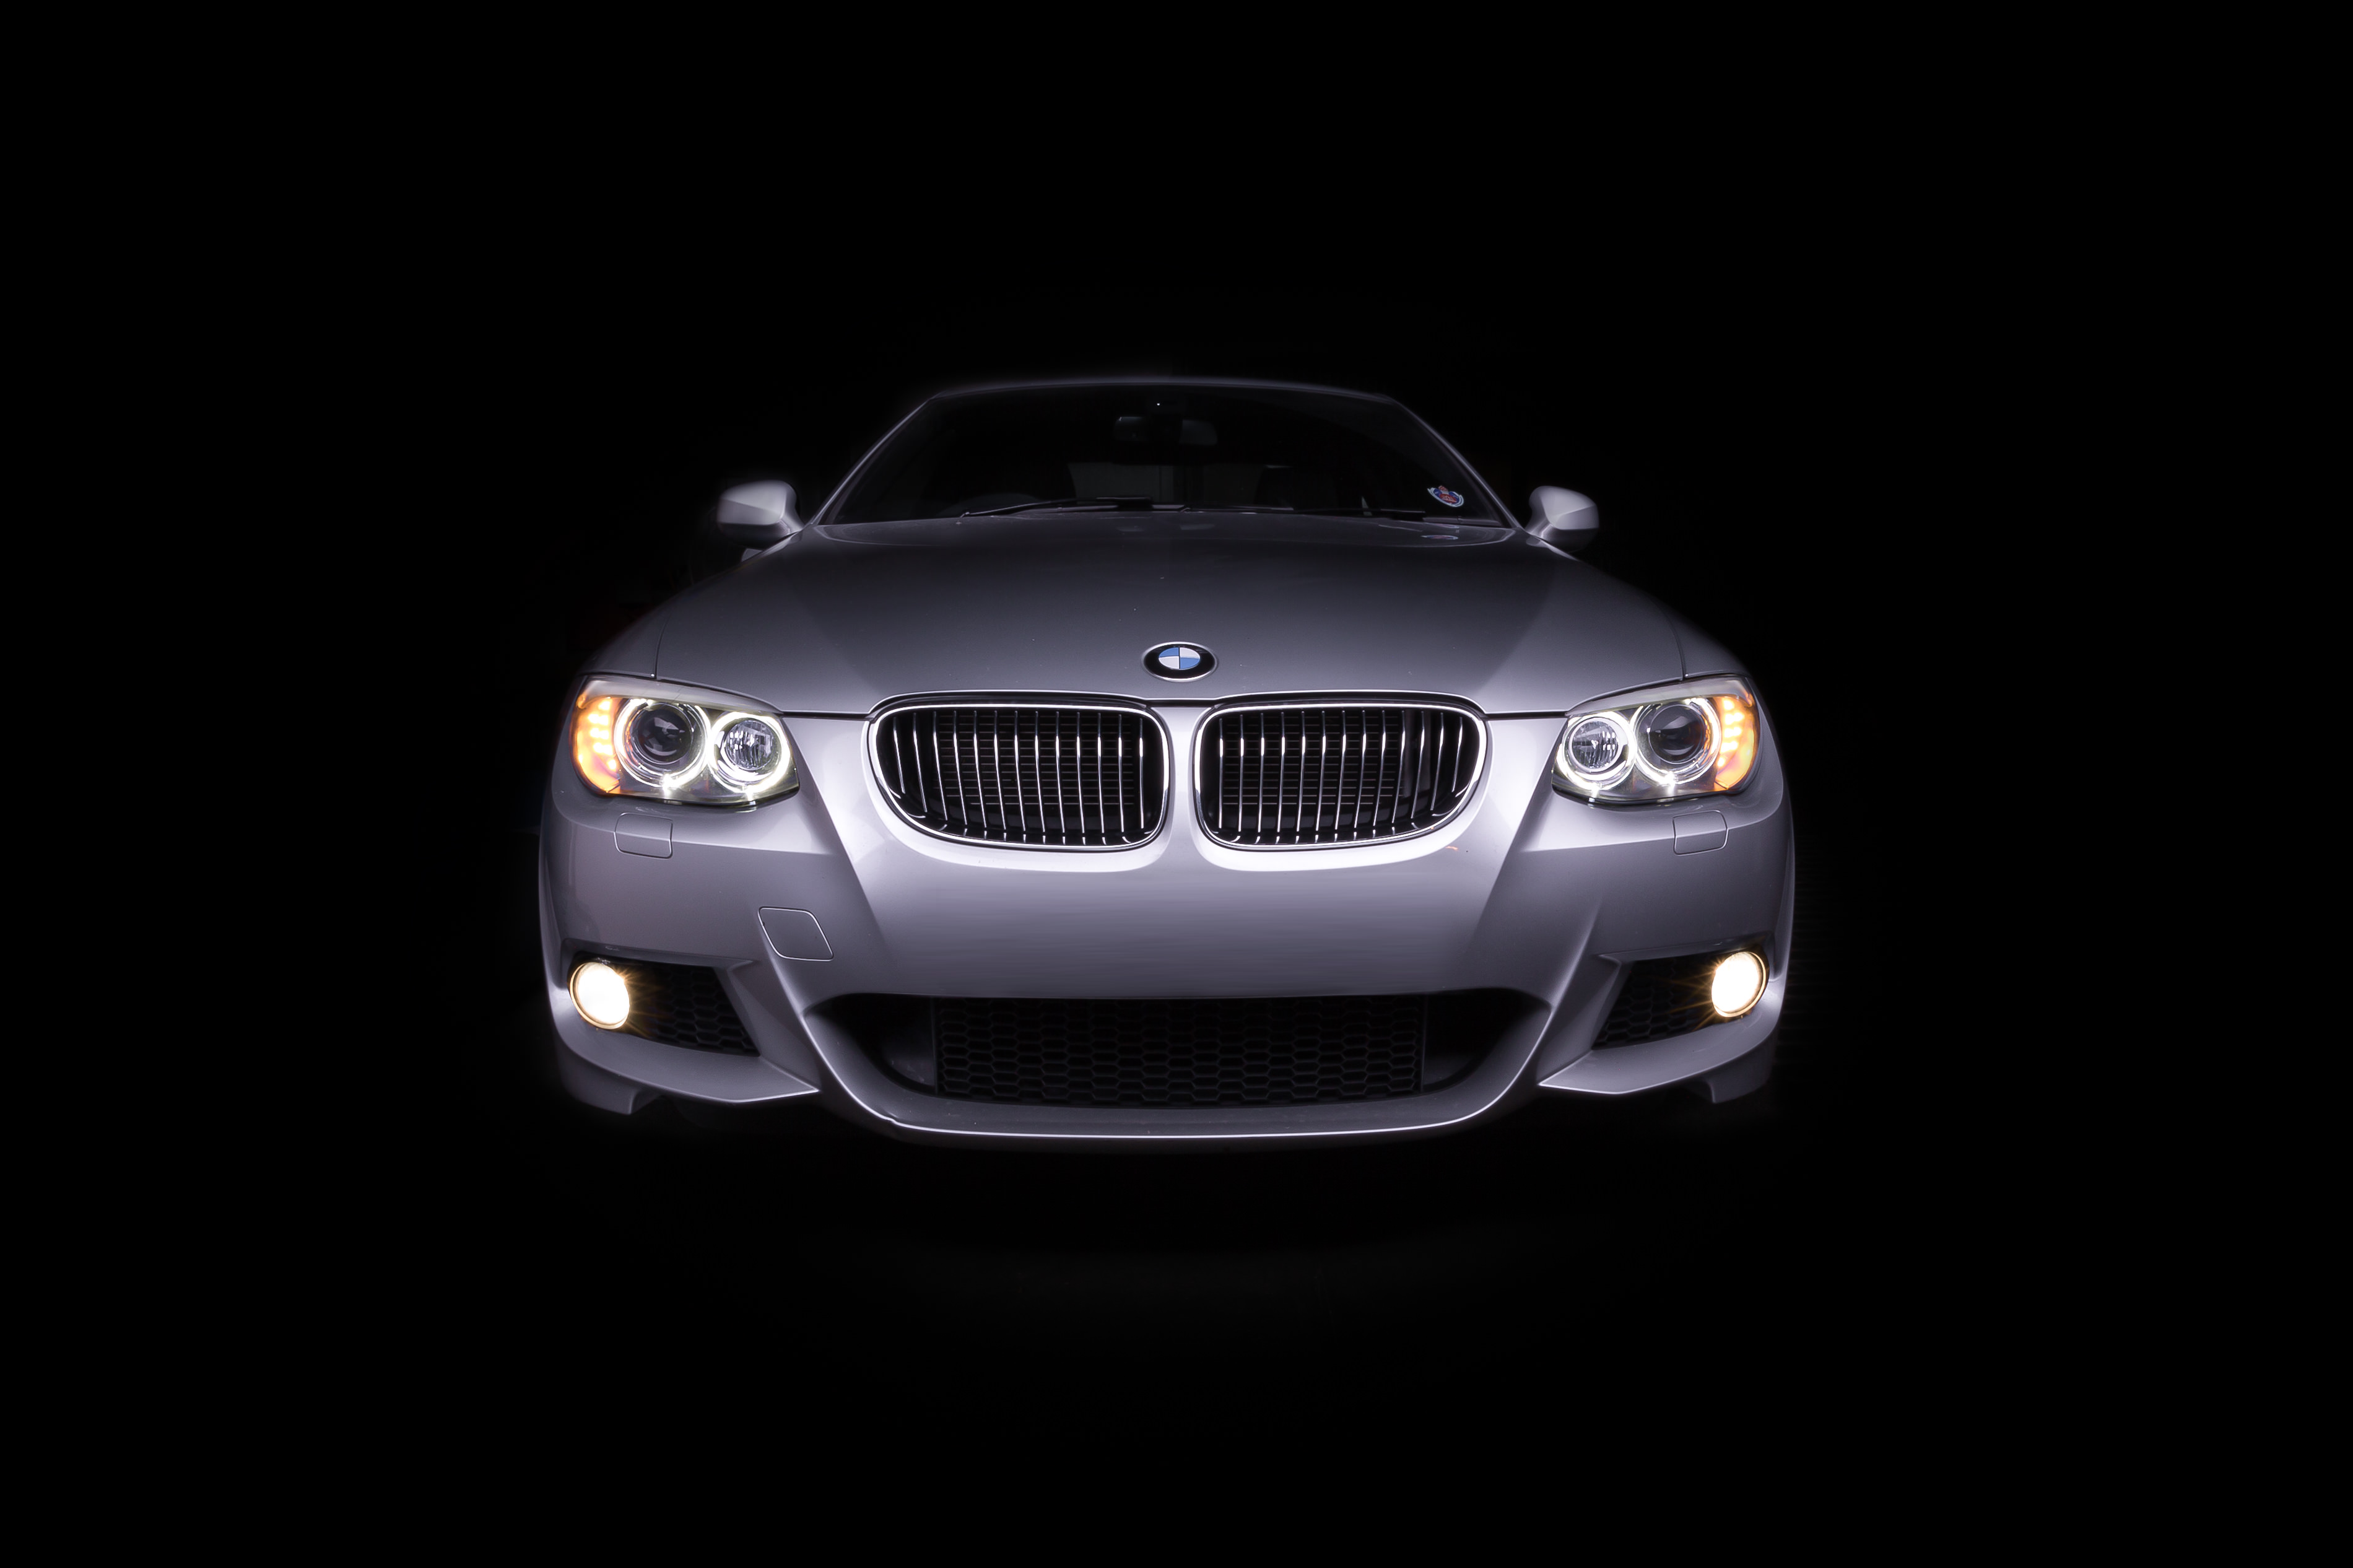 Light painted bonnet of BMW m235i automotive photography